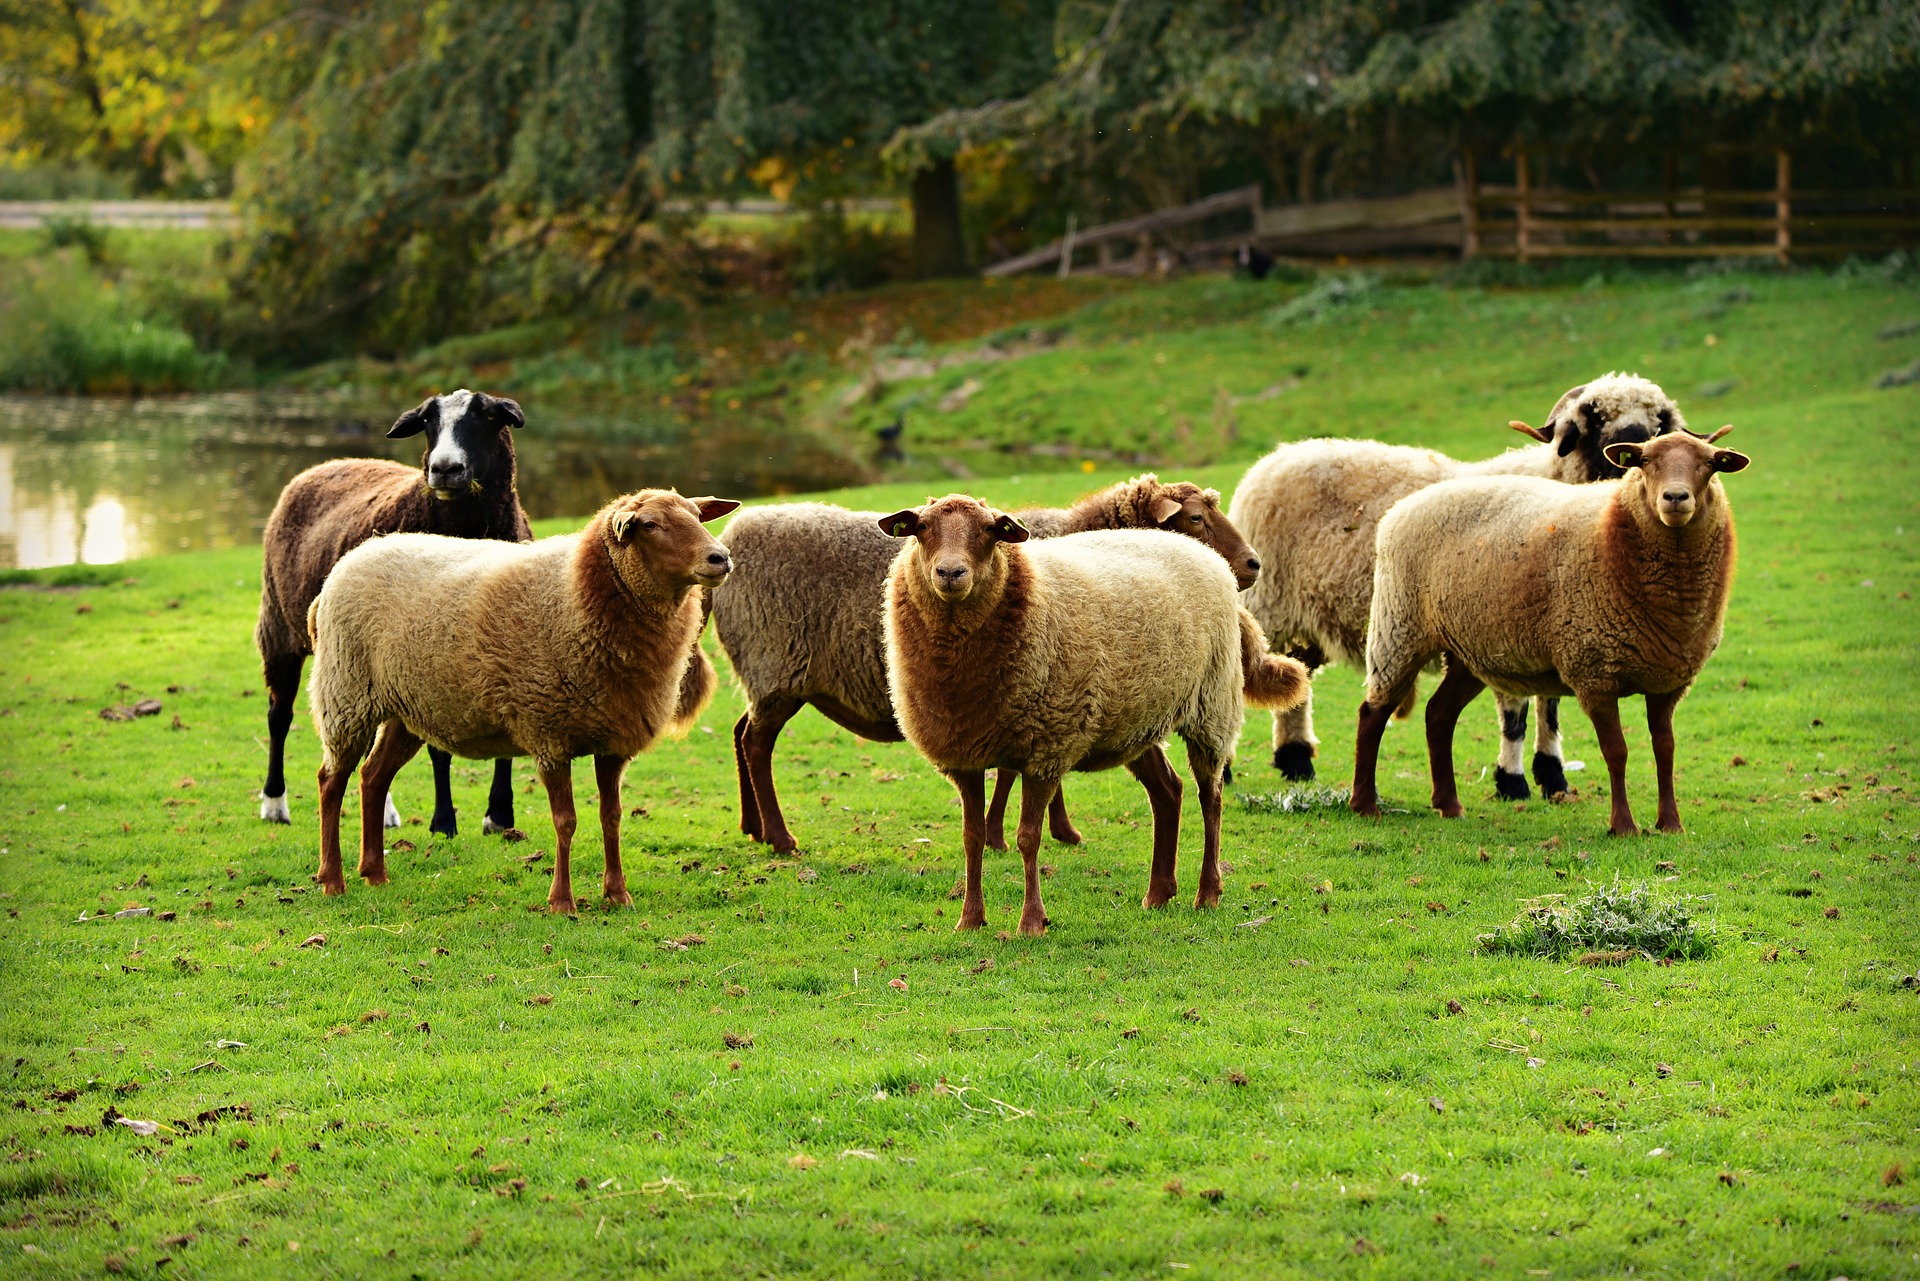 sheep in field looking towards viewer